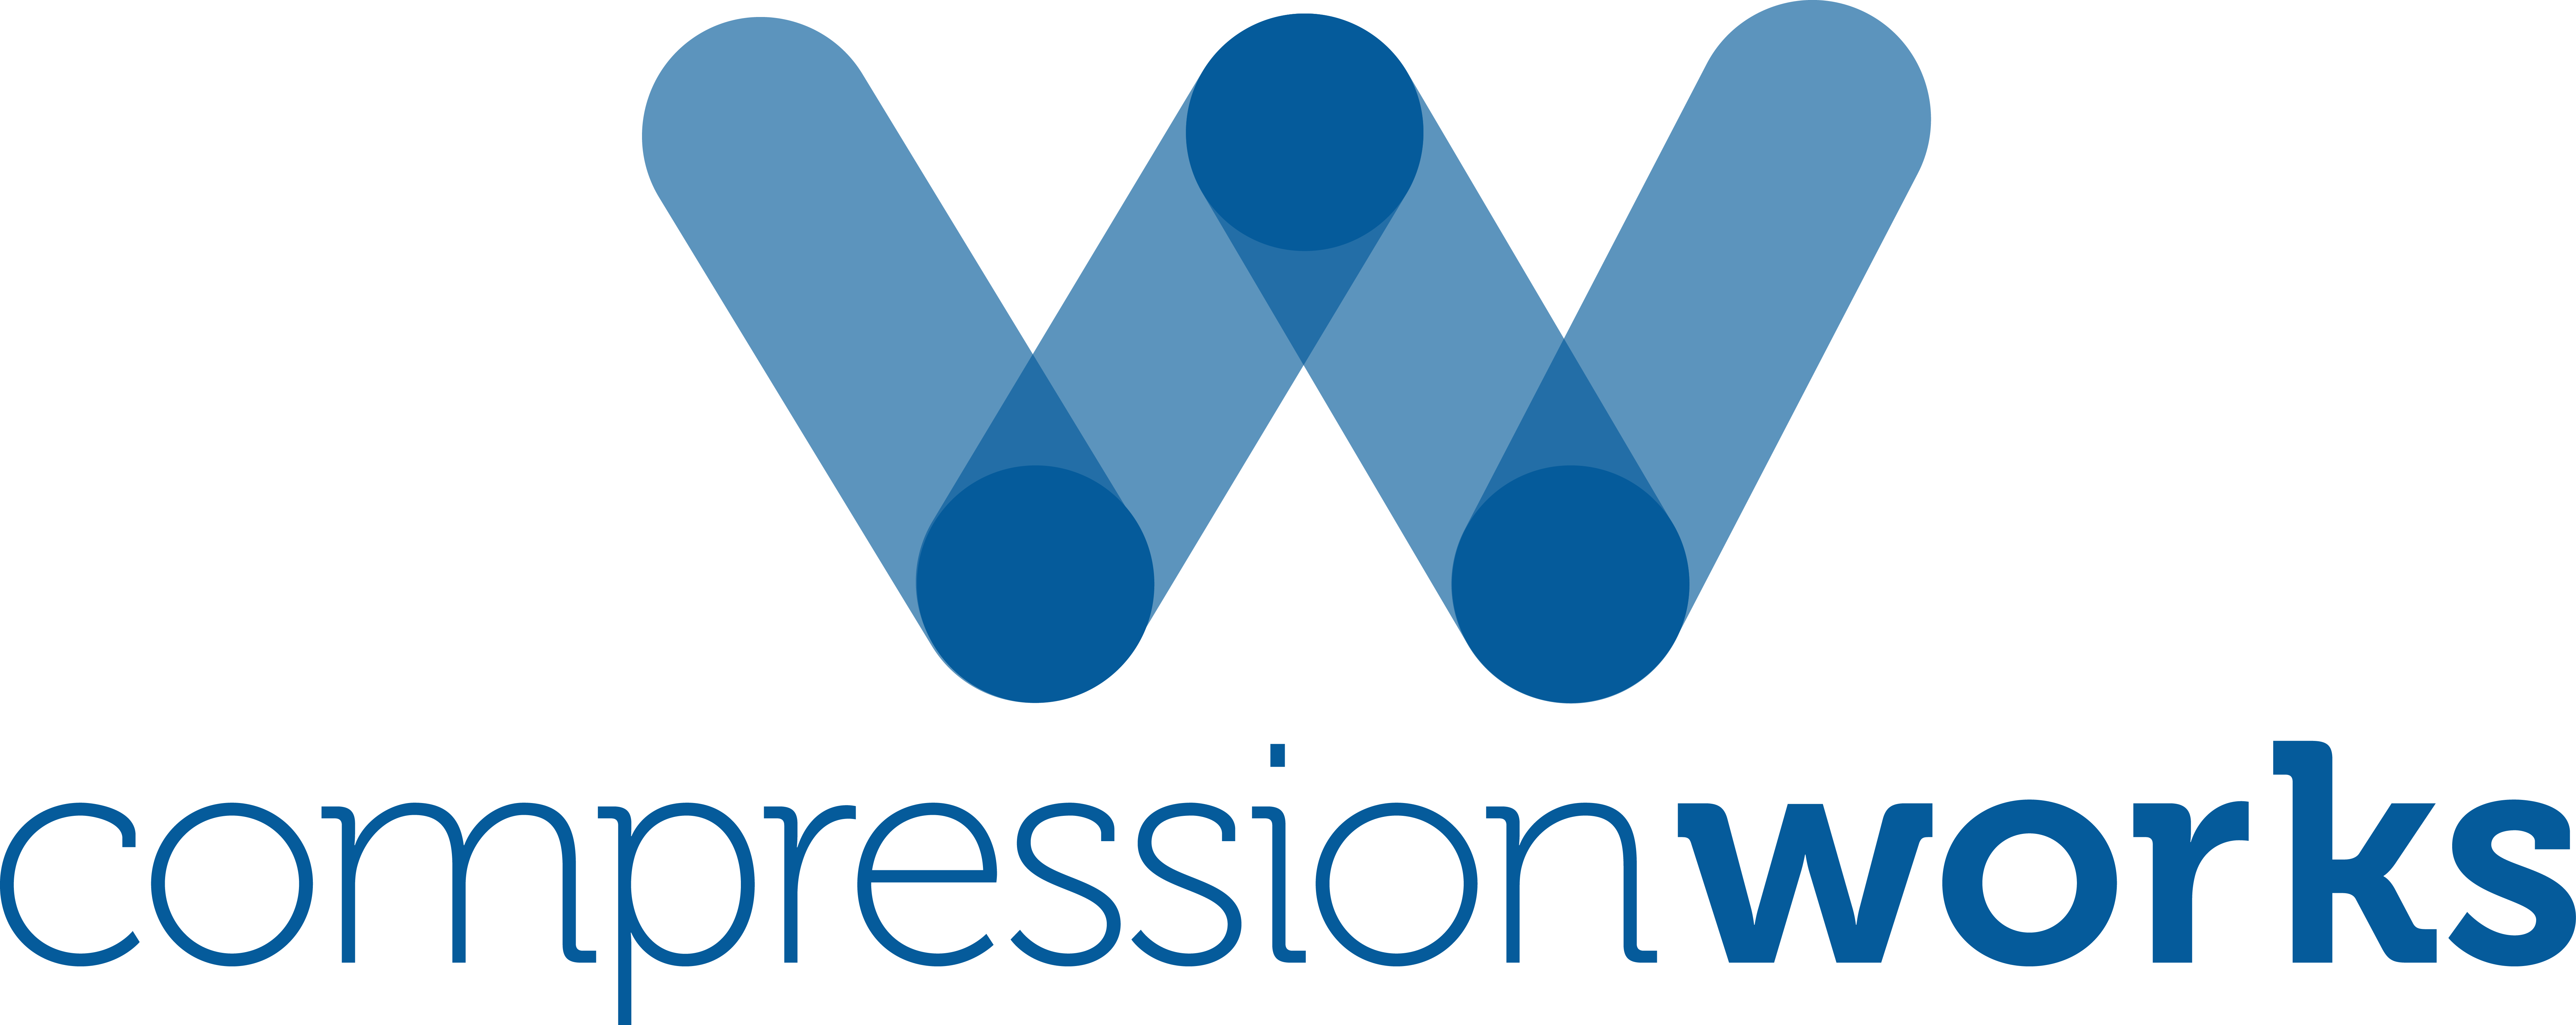 compression works logo